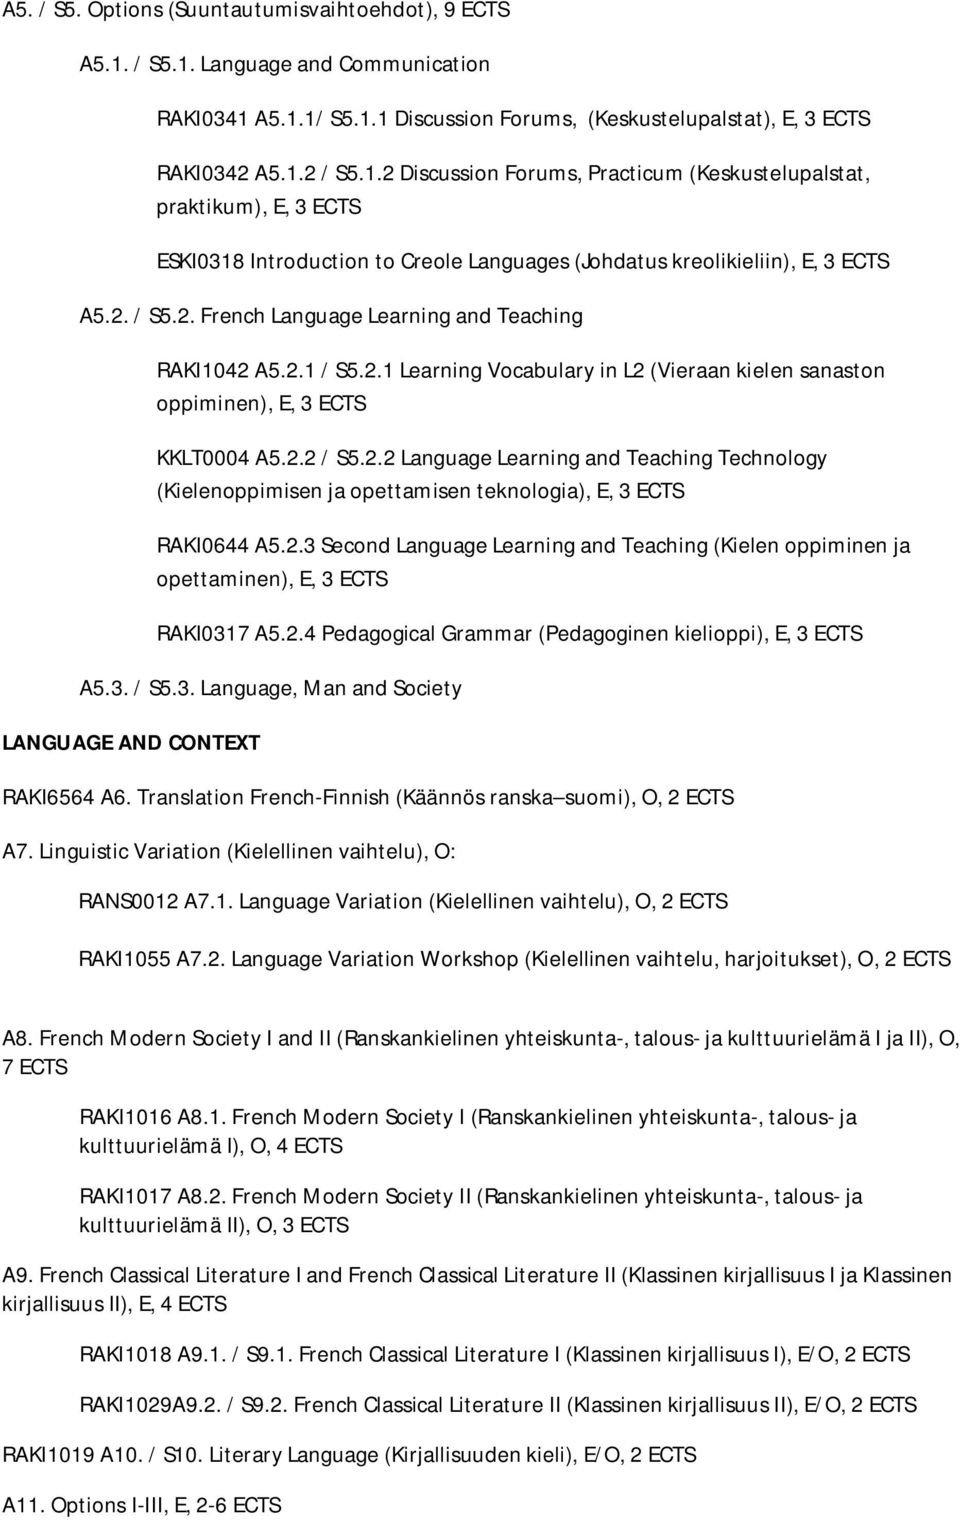 2. / S5.2. French Language Learning and Teaching RAKI1042 A5.2.1 / S5.2.1 Learning Vocabulary in L2 (Vieraan kielen sanaston oppiminen), E, 3 ECTS KKLT0004 A5.2.2 / S5.2.2 Language Learning and Teaching Technology (Kielenoppimisen ja opettamisen teknologia), E, 3 ECTS RAKI0644 A5.